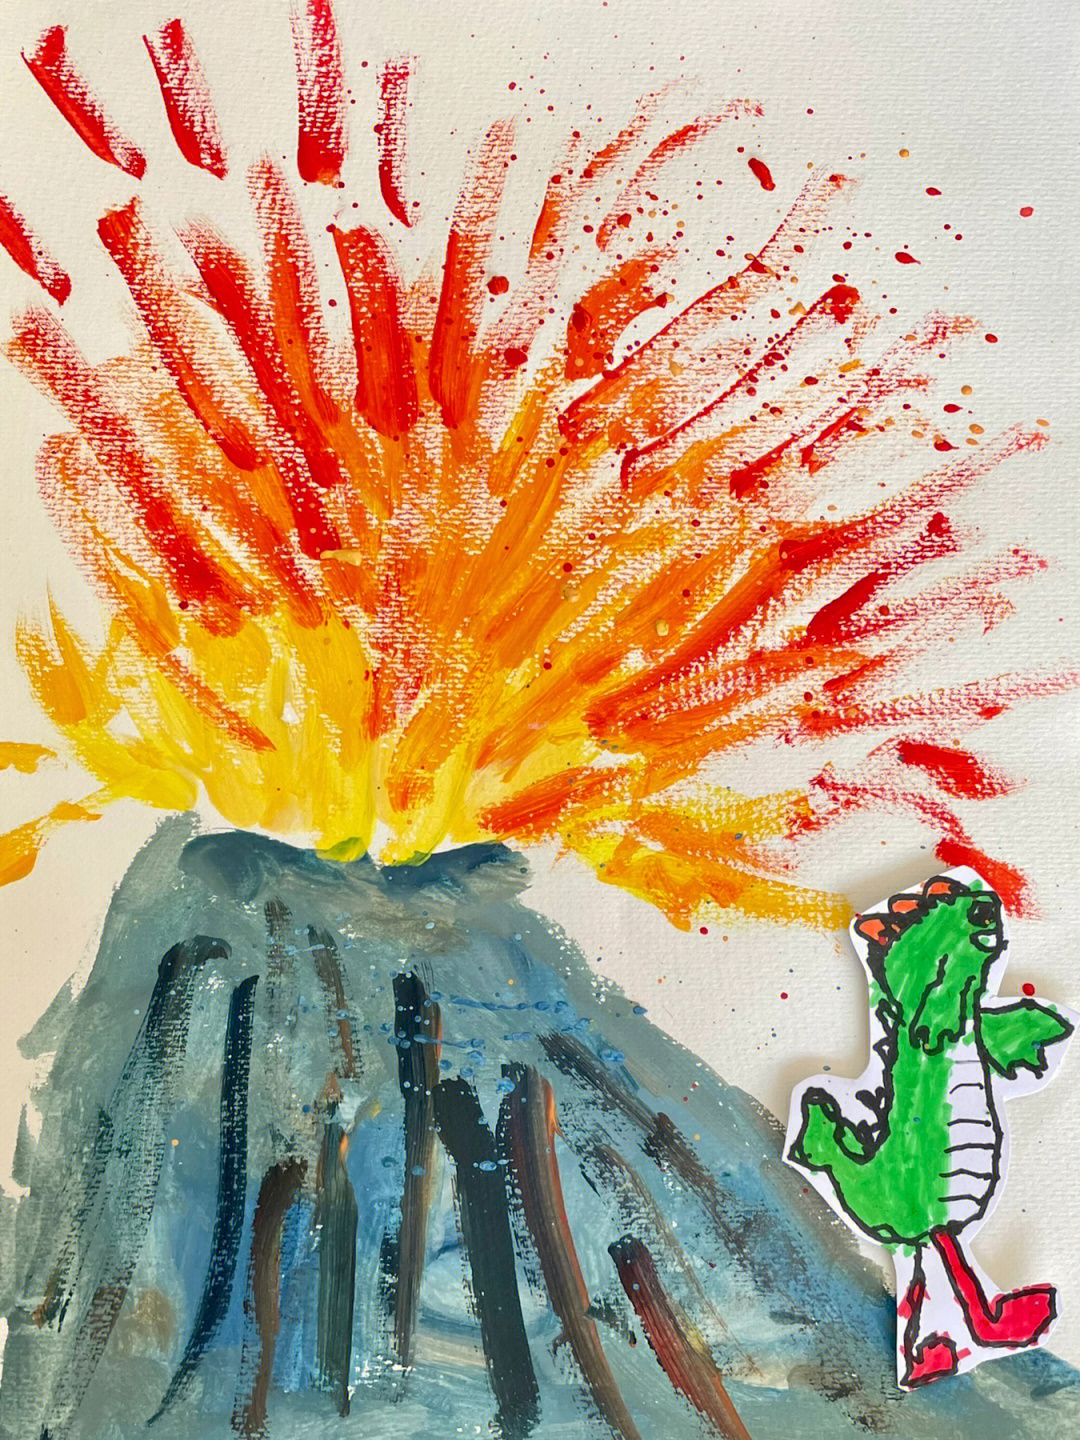 火山的简笔画涂色图片